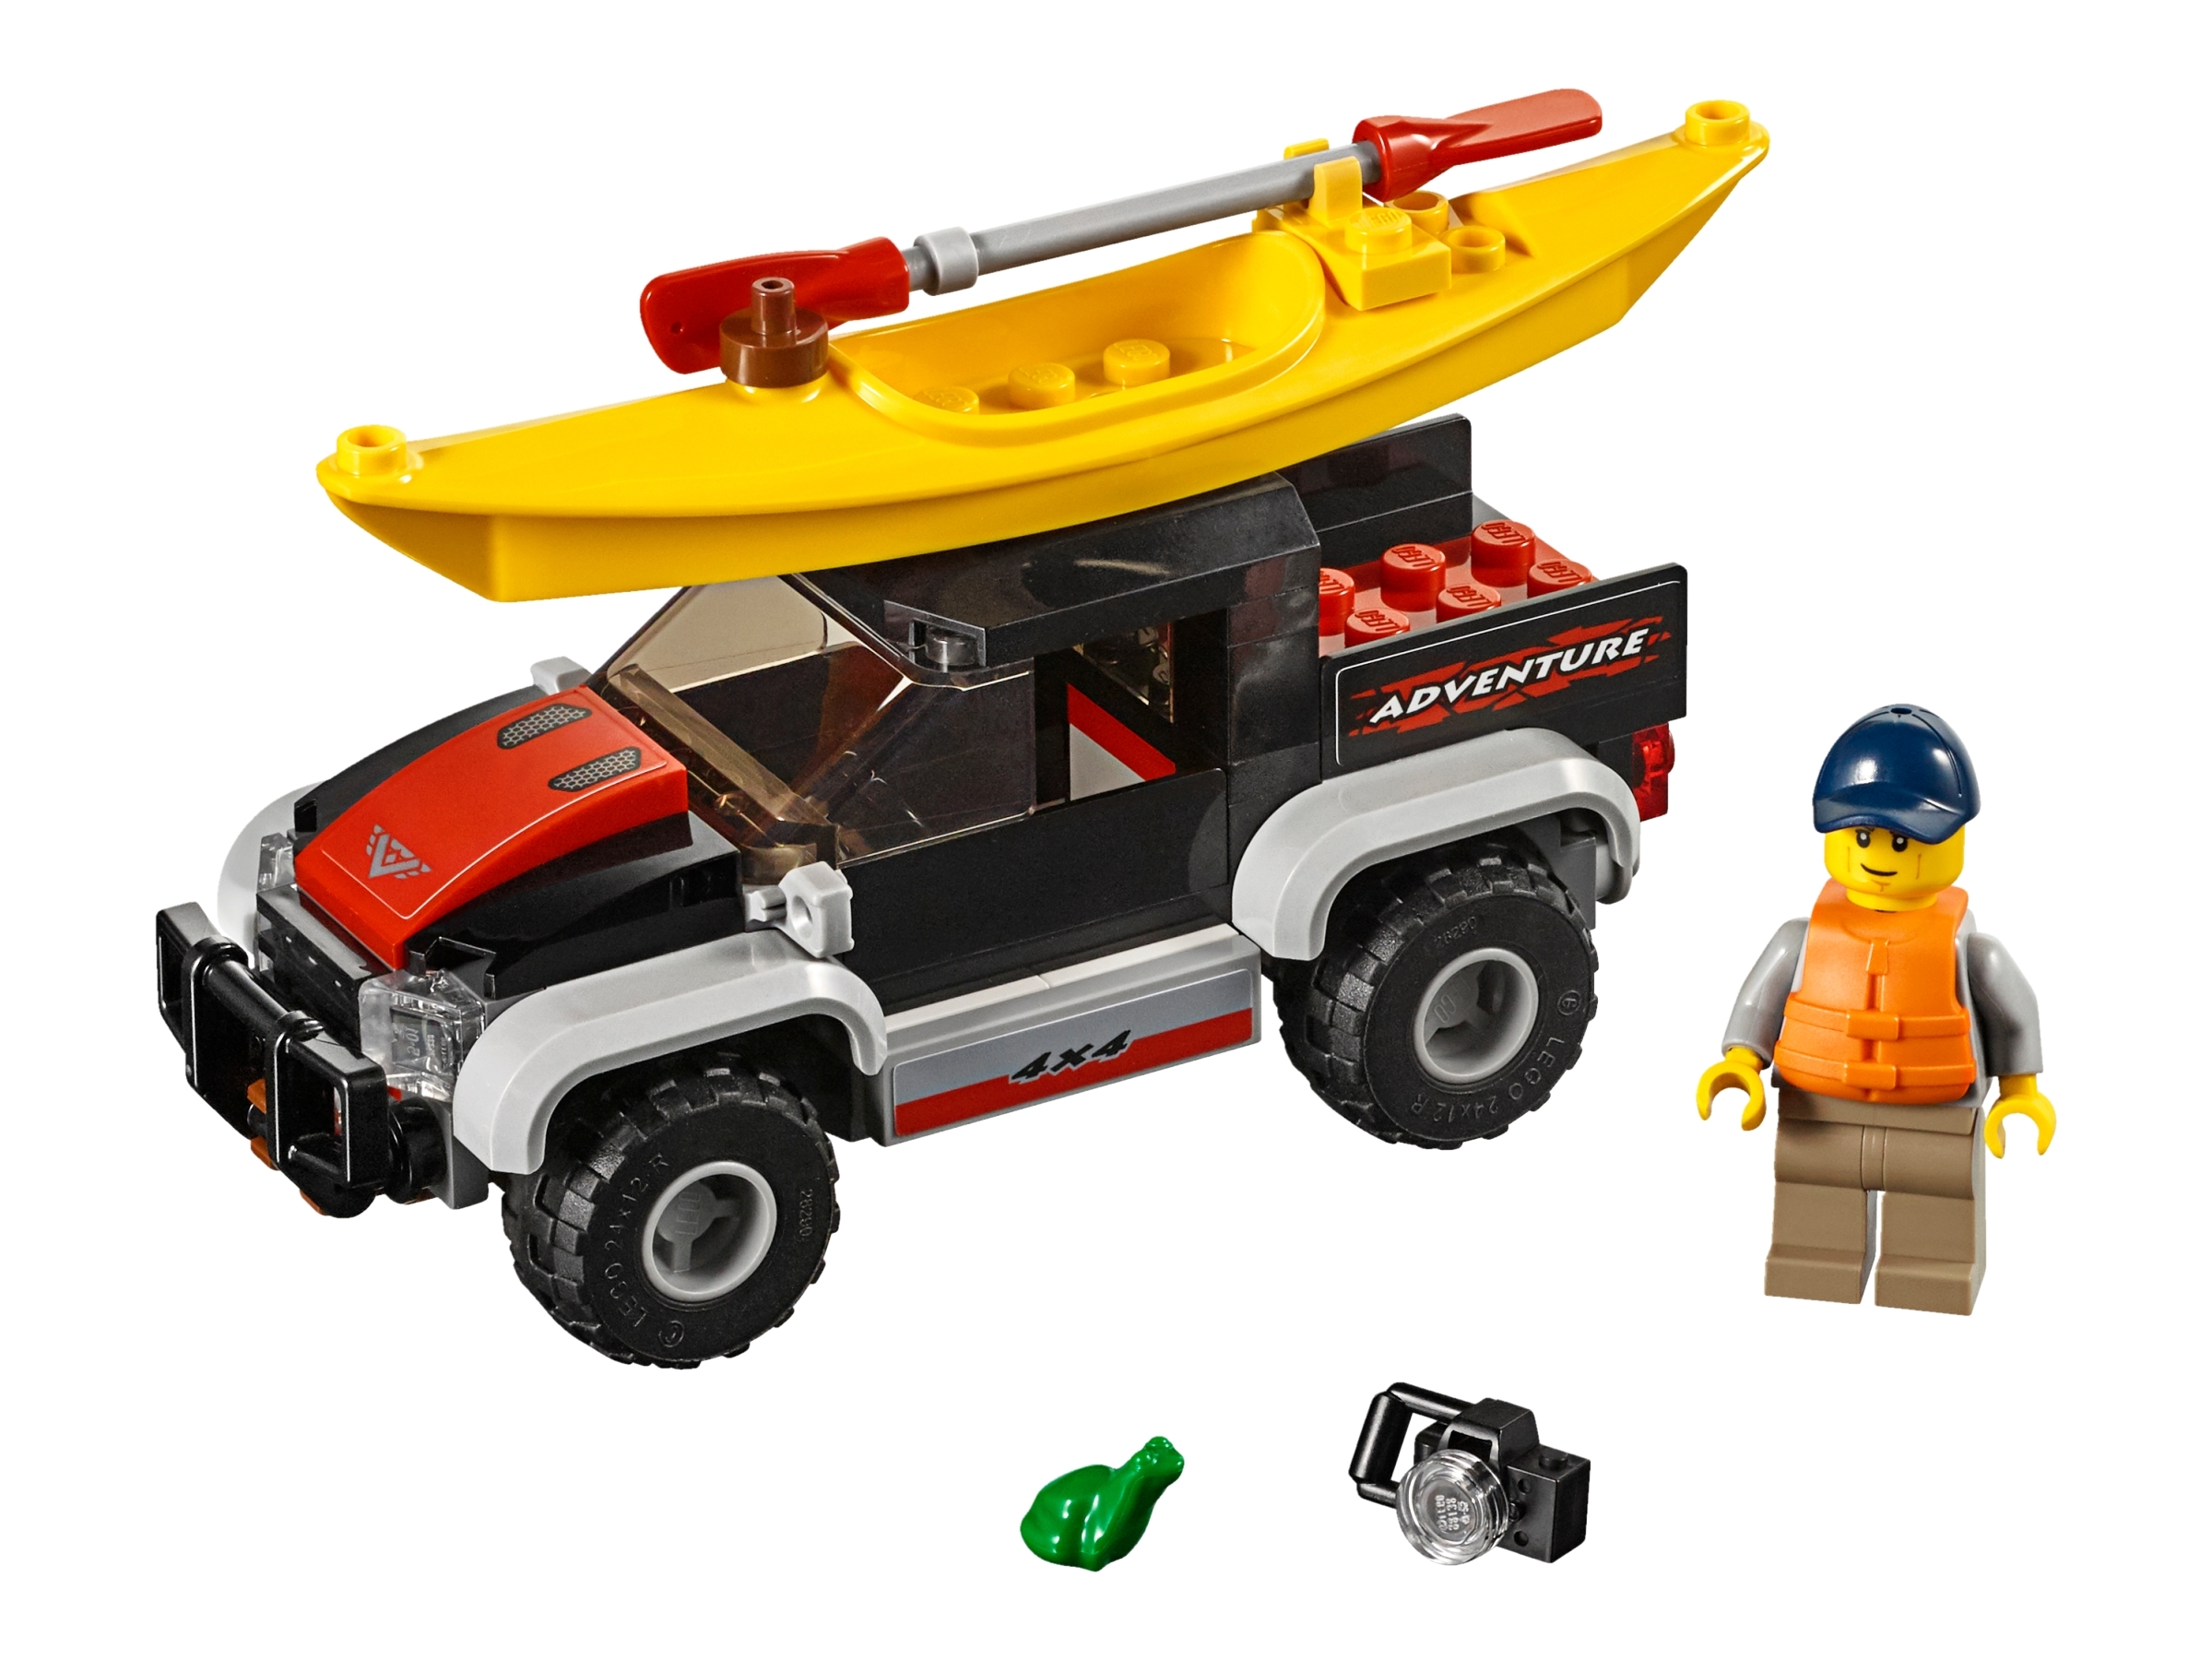 Forkludret Viva pilot Kayak Adventure 60240 | City | Buy online at the Official LEGO® Shop US